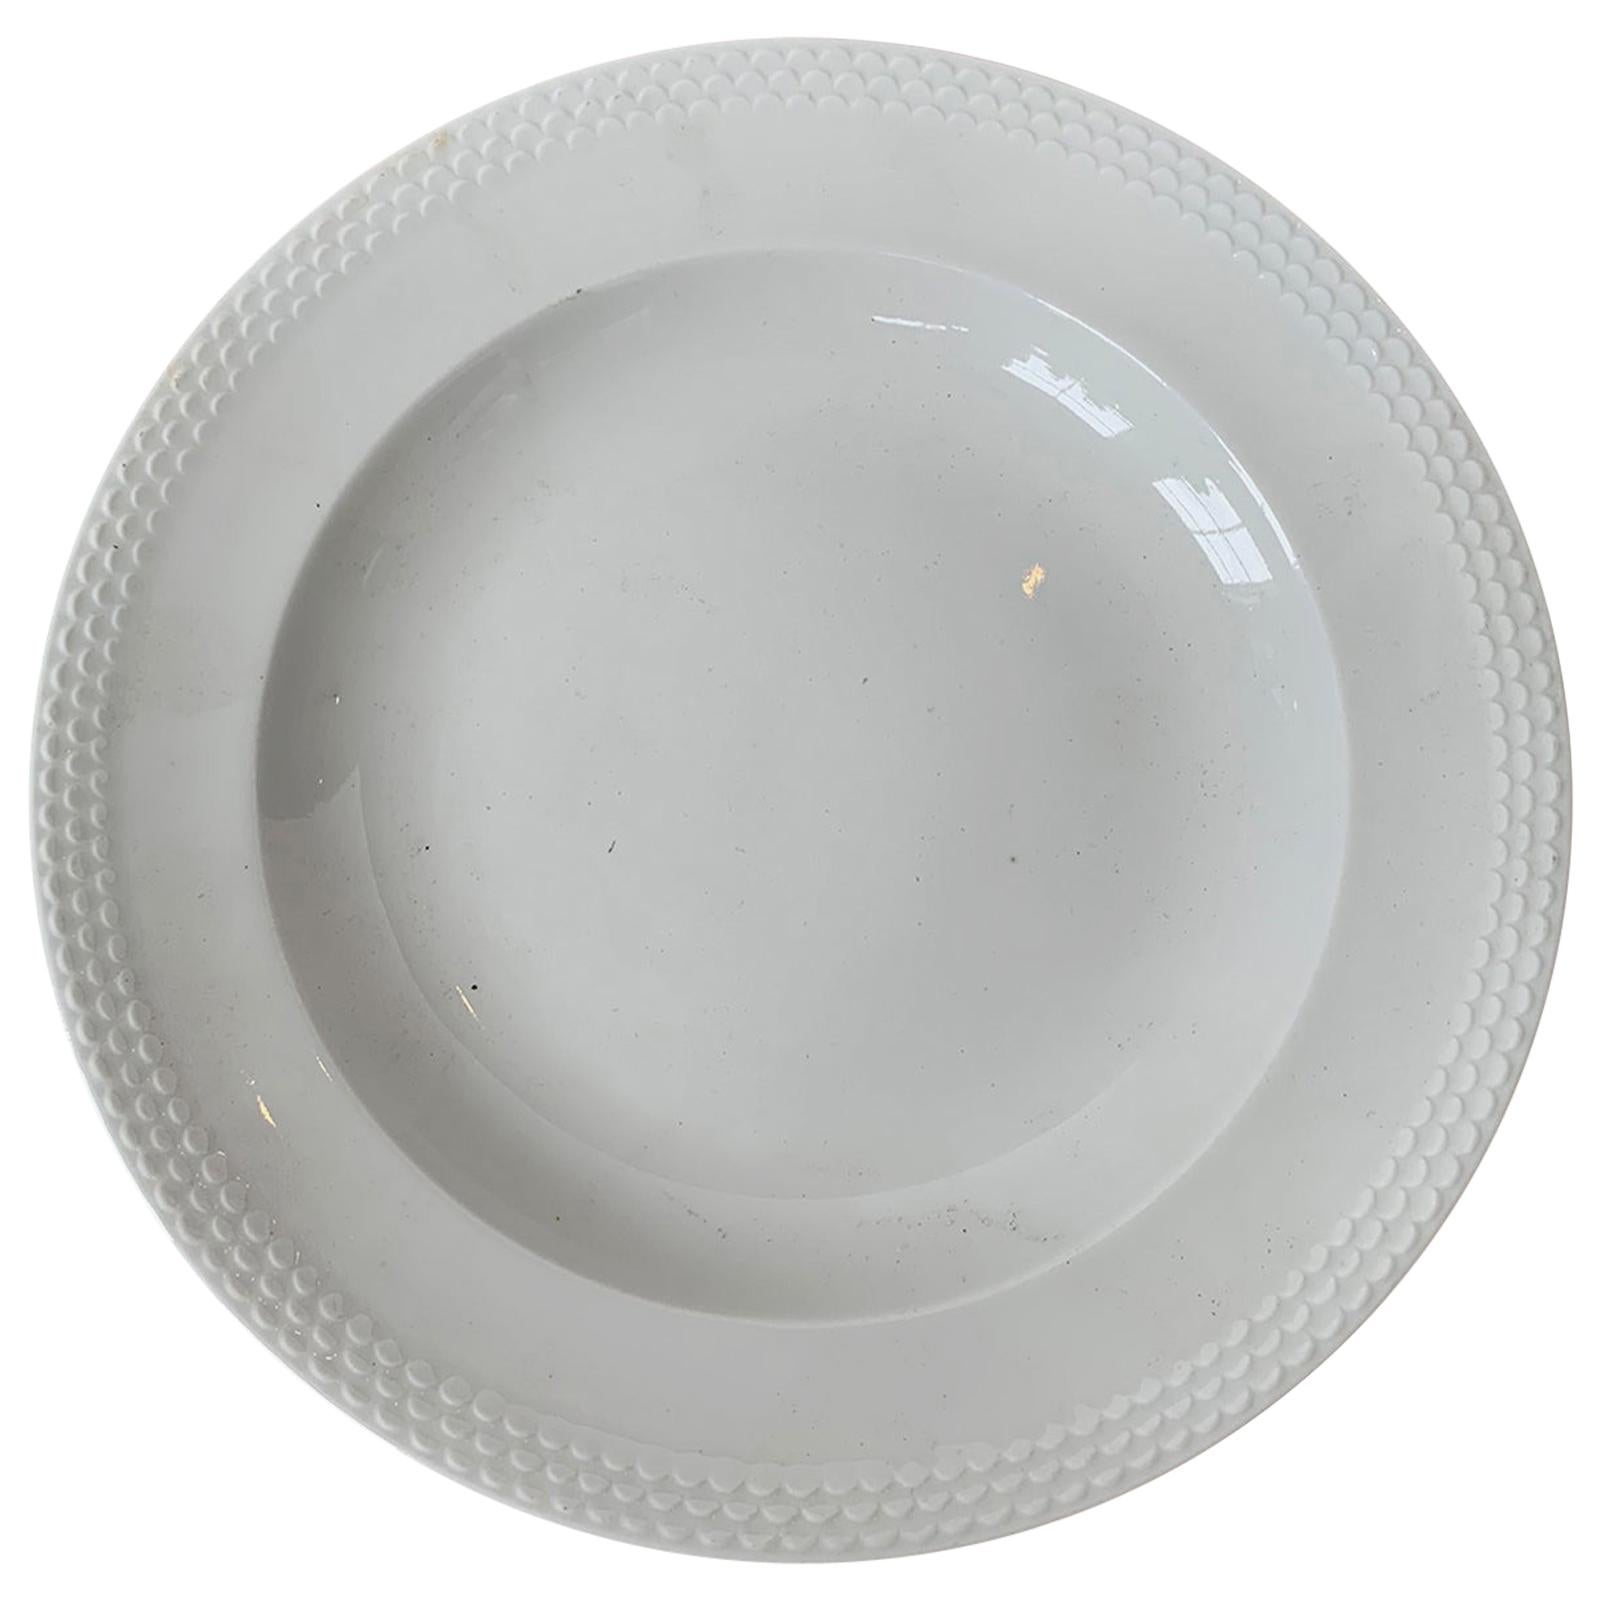 Marked Meissen "Weiss Geschirr" German White Porcelain Plate, circa 1934 For Sale